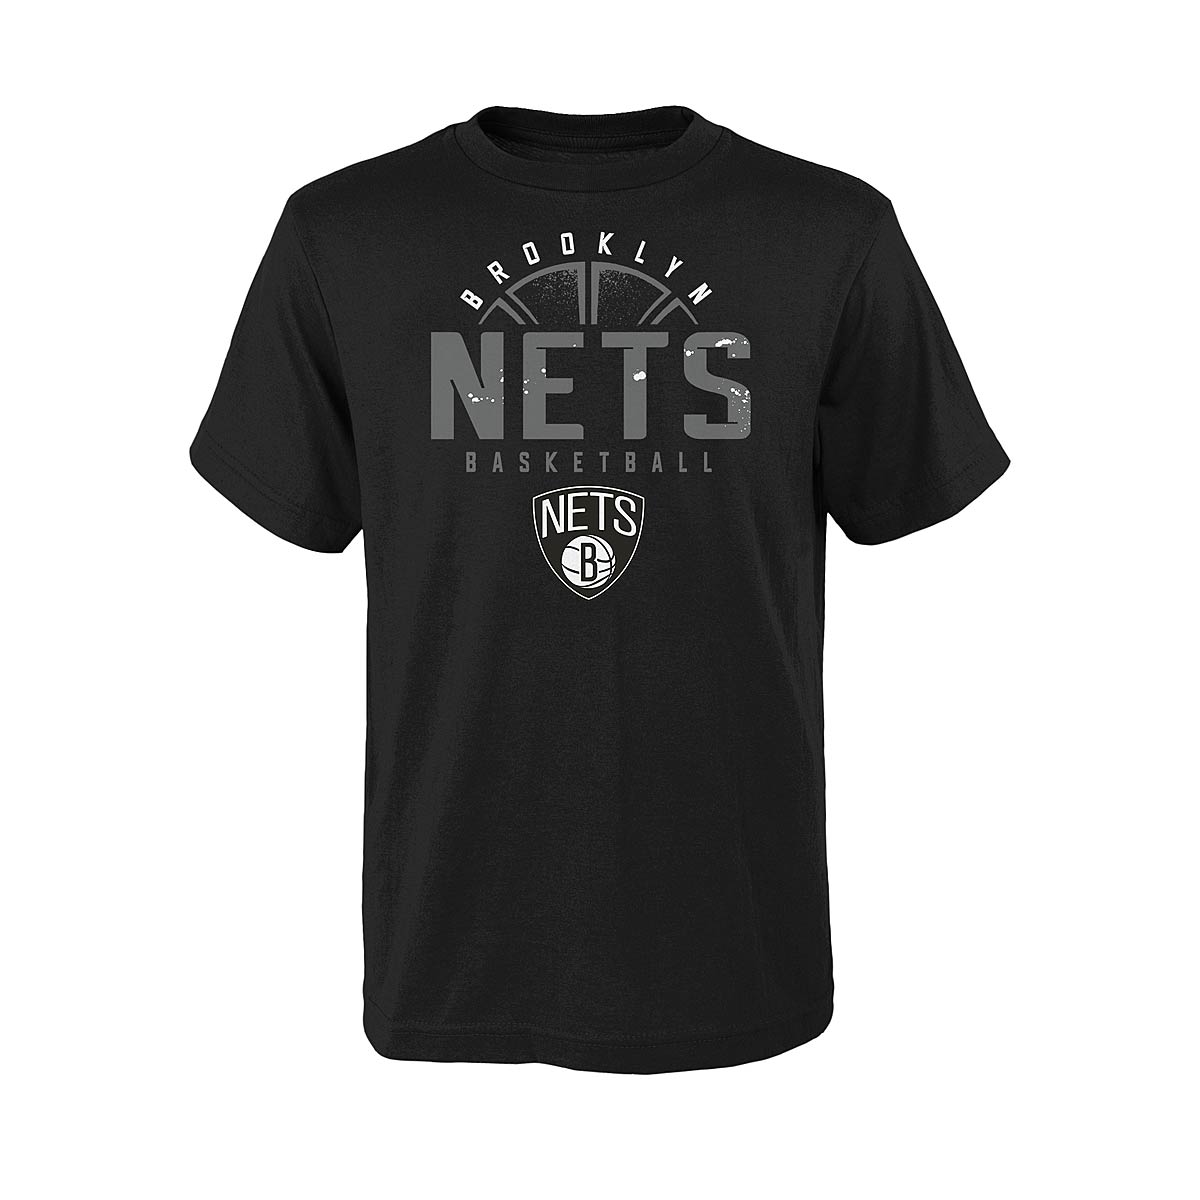 Outerstuff Kids Nba Brooklyn Nets Street Ball T-Shirt Kids, Black